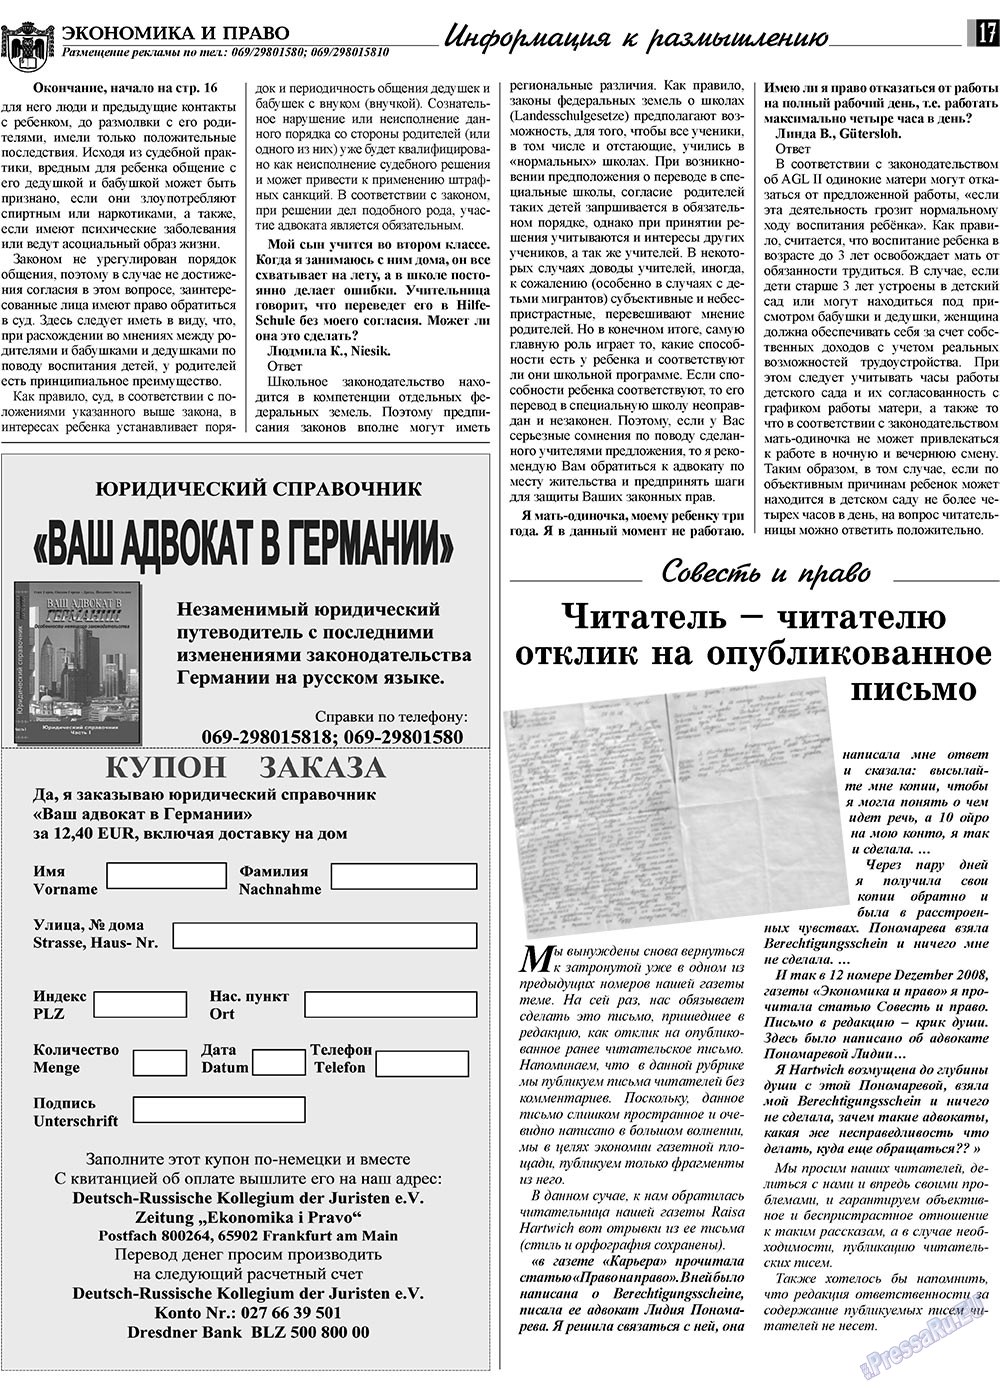 Экономика и право, газета. 2009 №2 стр.17